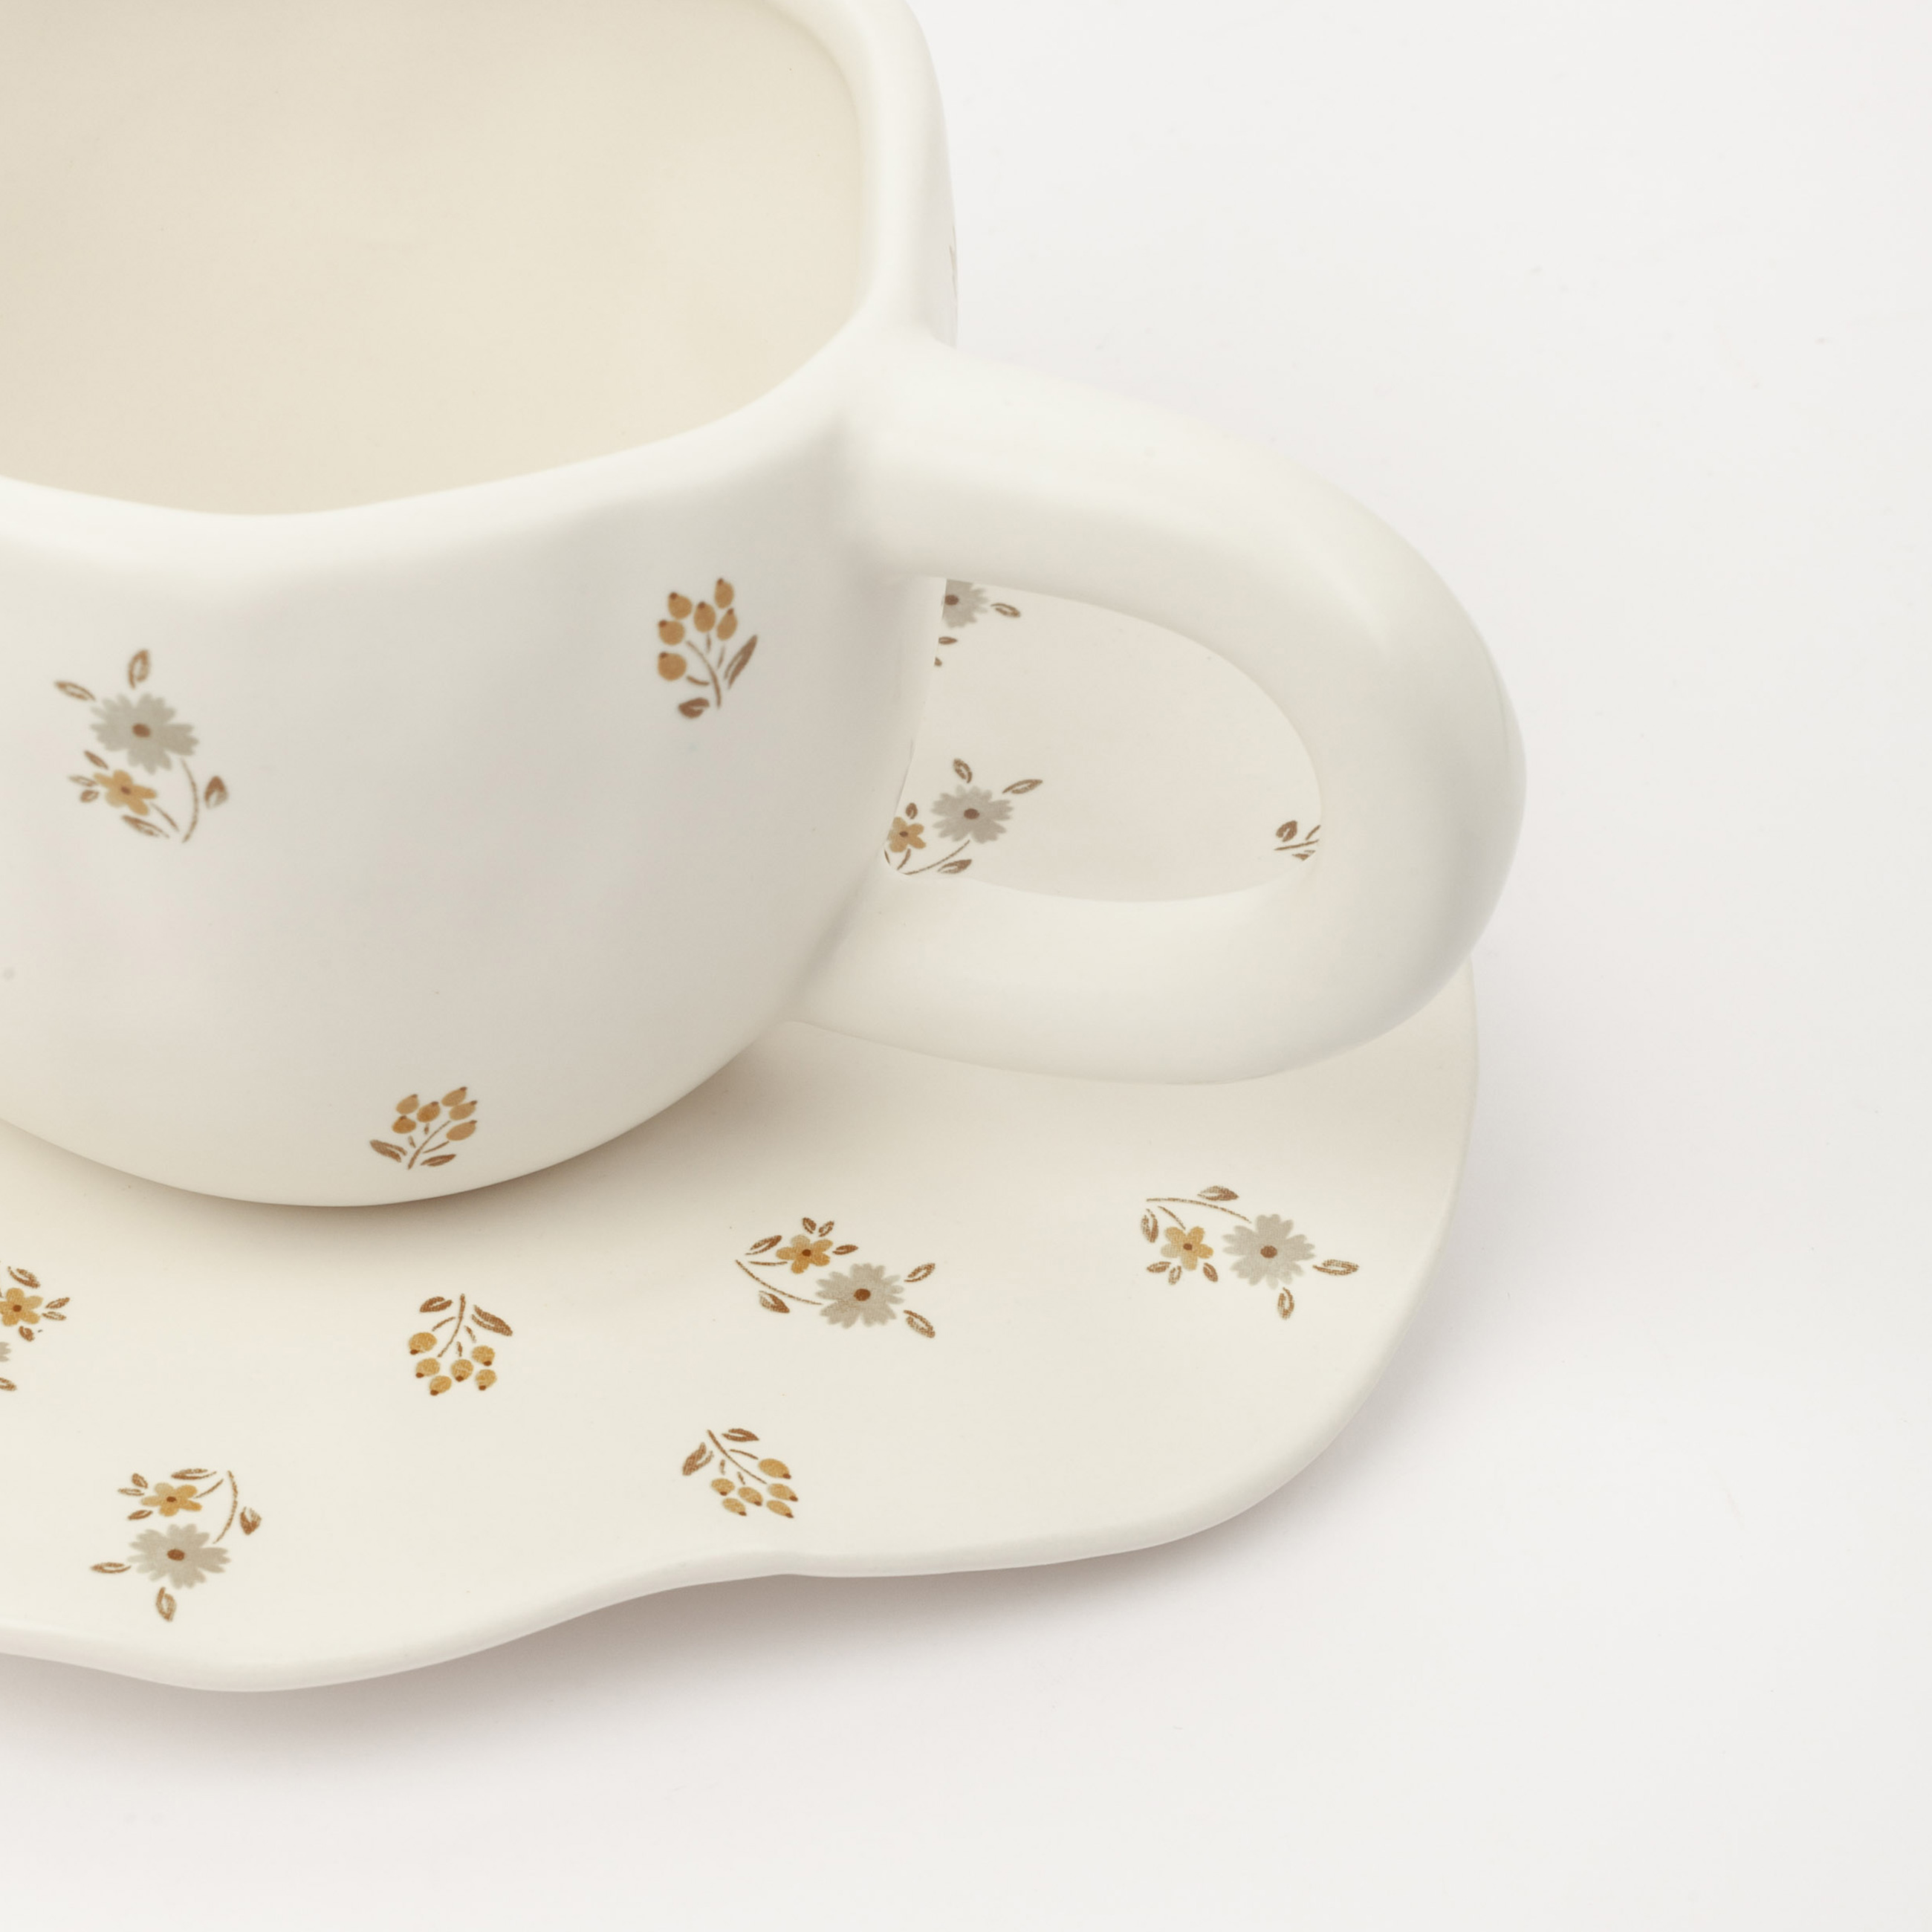 Пара чайная, 1 перс, 2 пр, 360 мл, керамика, молочная, Винтажные цветы, La flore изображение № 3